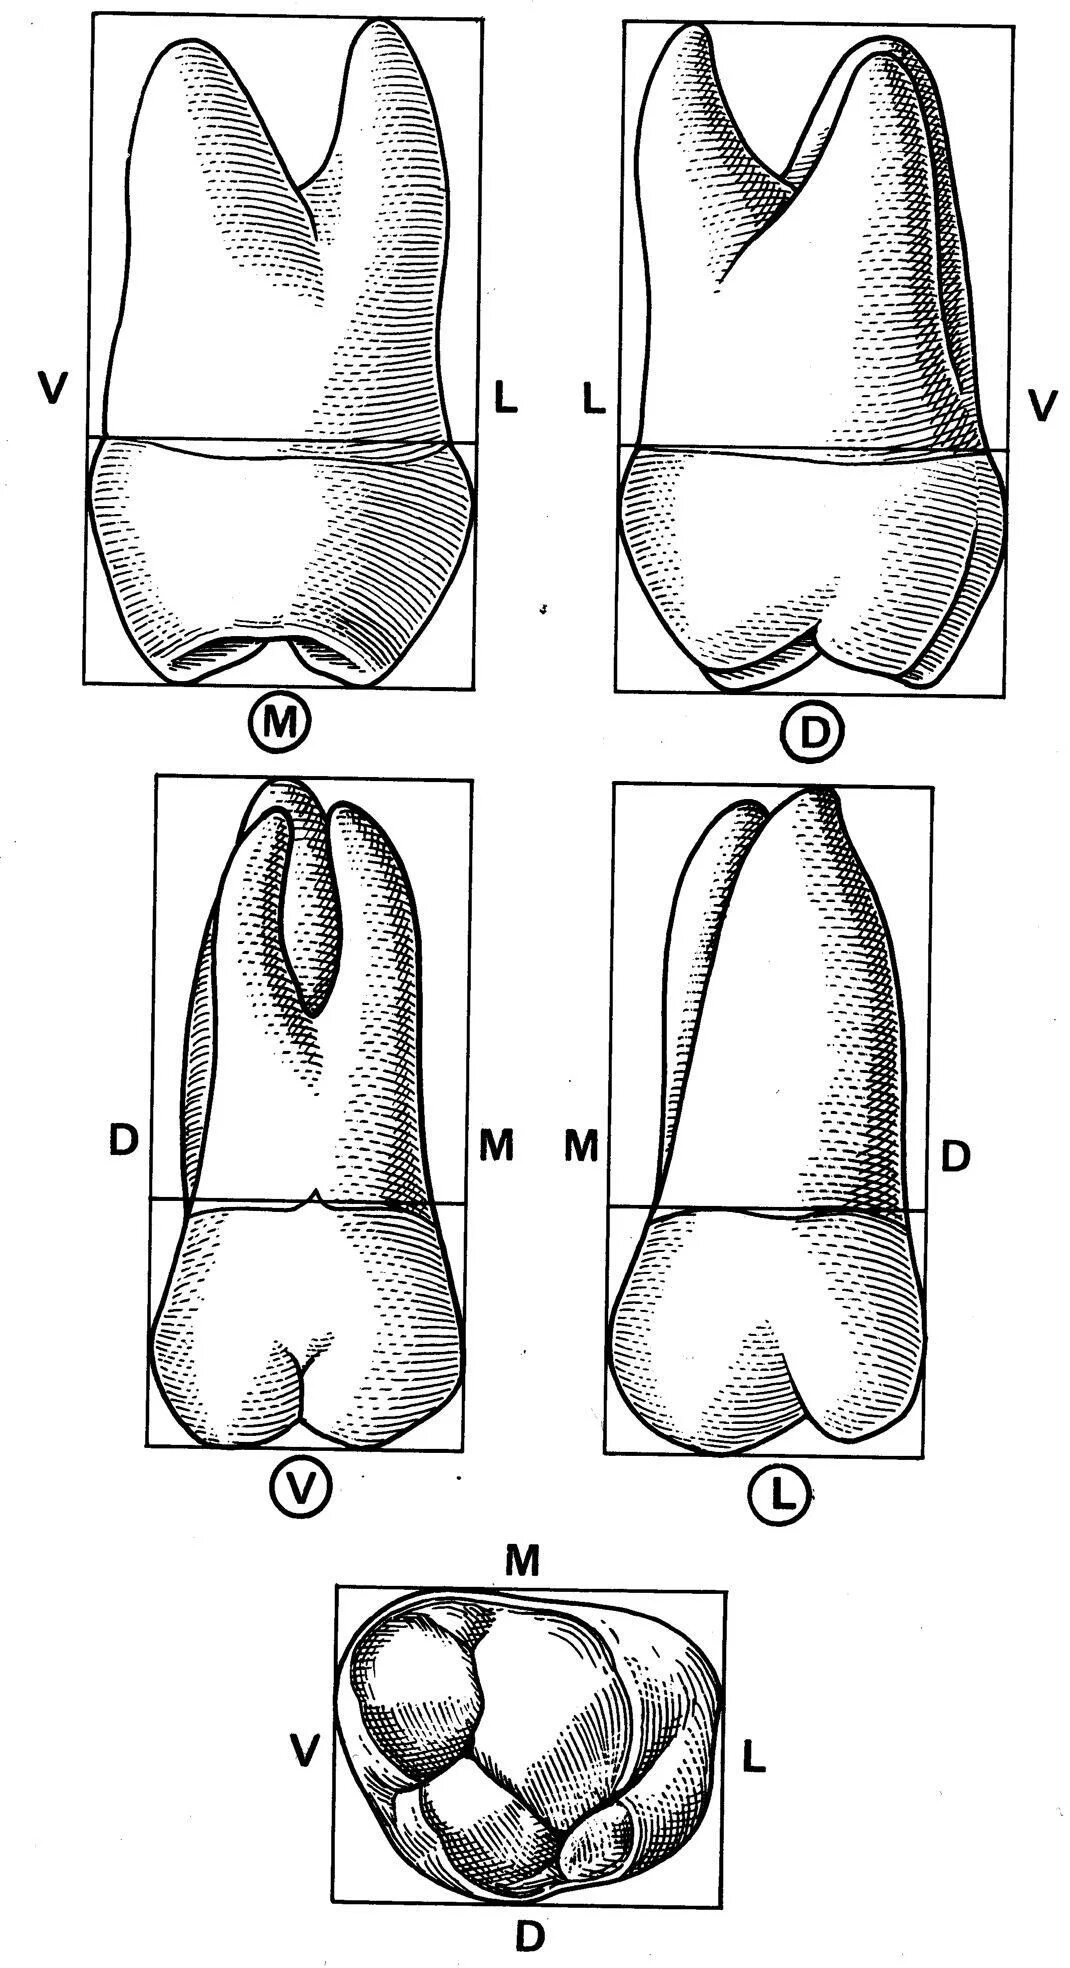 Первый моляр верхней челюсти. Второй моляр верхней челюсти корни. Первый моляр нижней челюсти. Зуб второй моляр верхней челюсти.